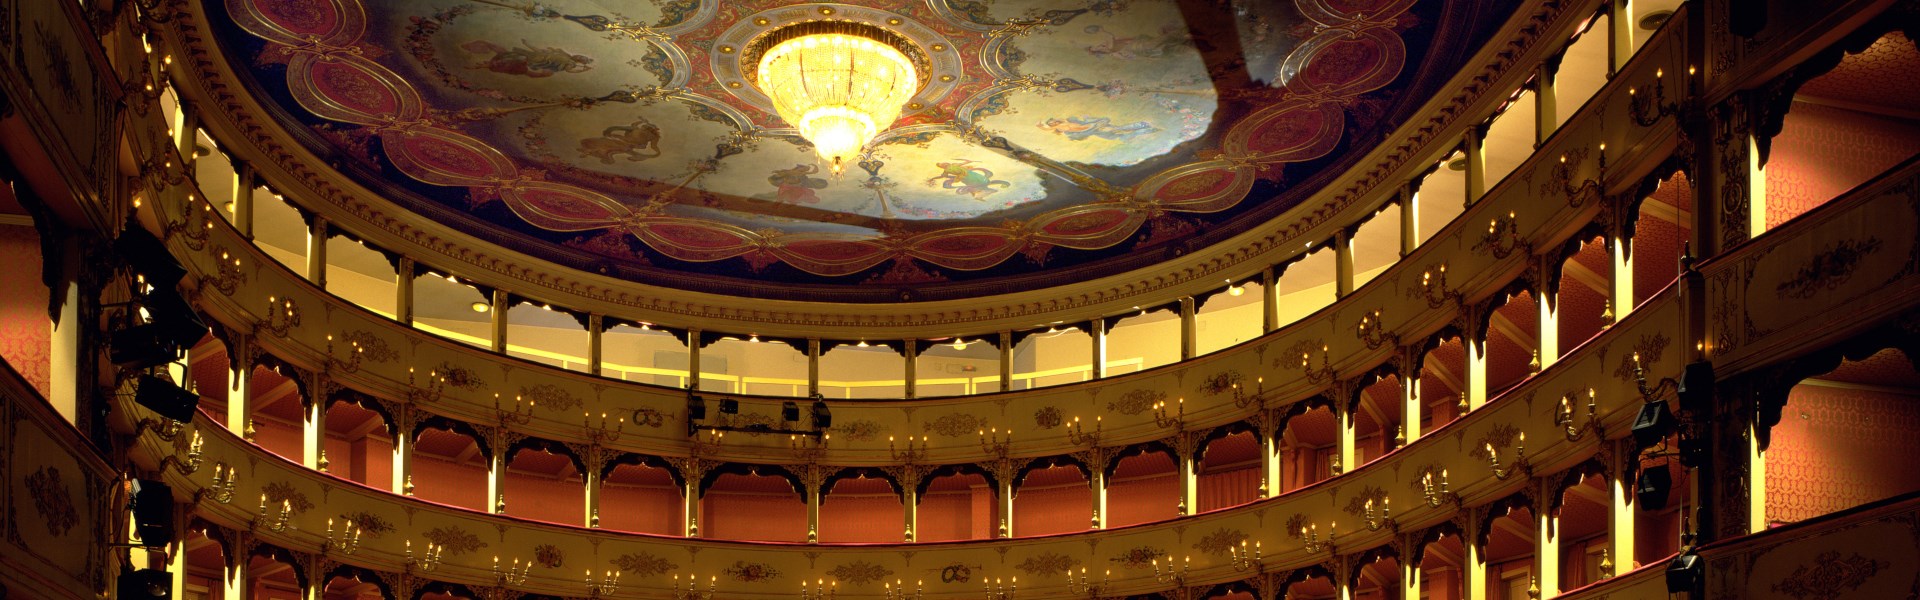 Pesaro - Interno Teatro Rossini